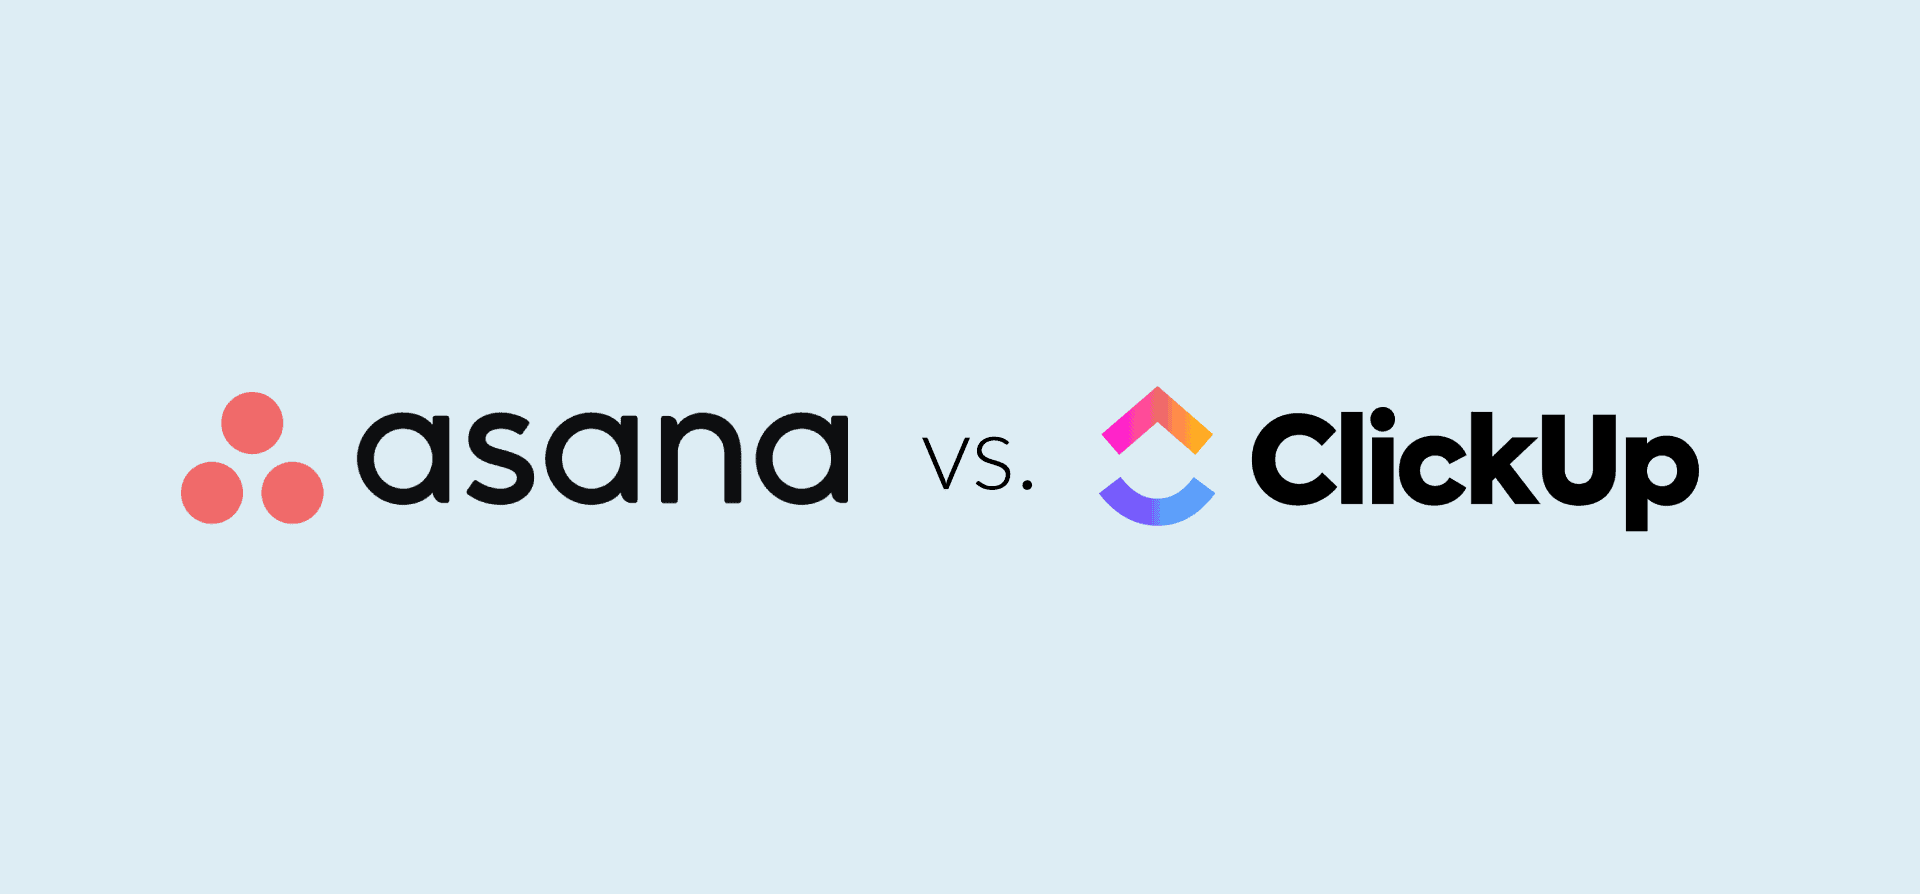 Logos for asana and clickup, representing the asana vs. clickup blog post